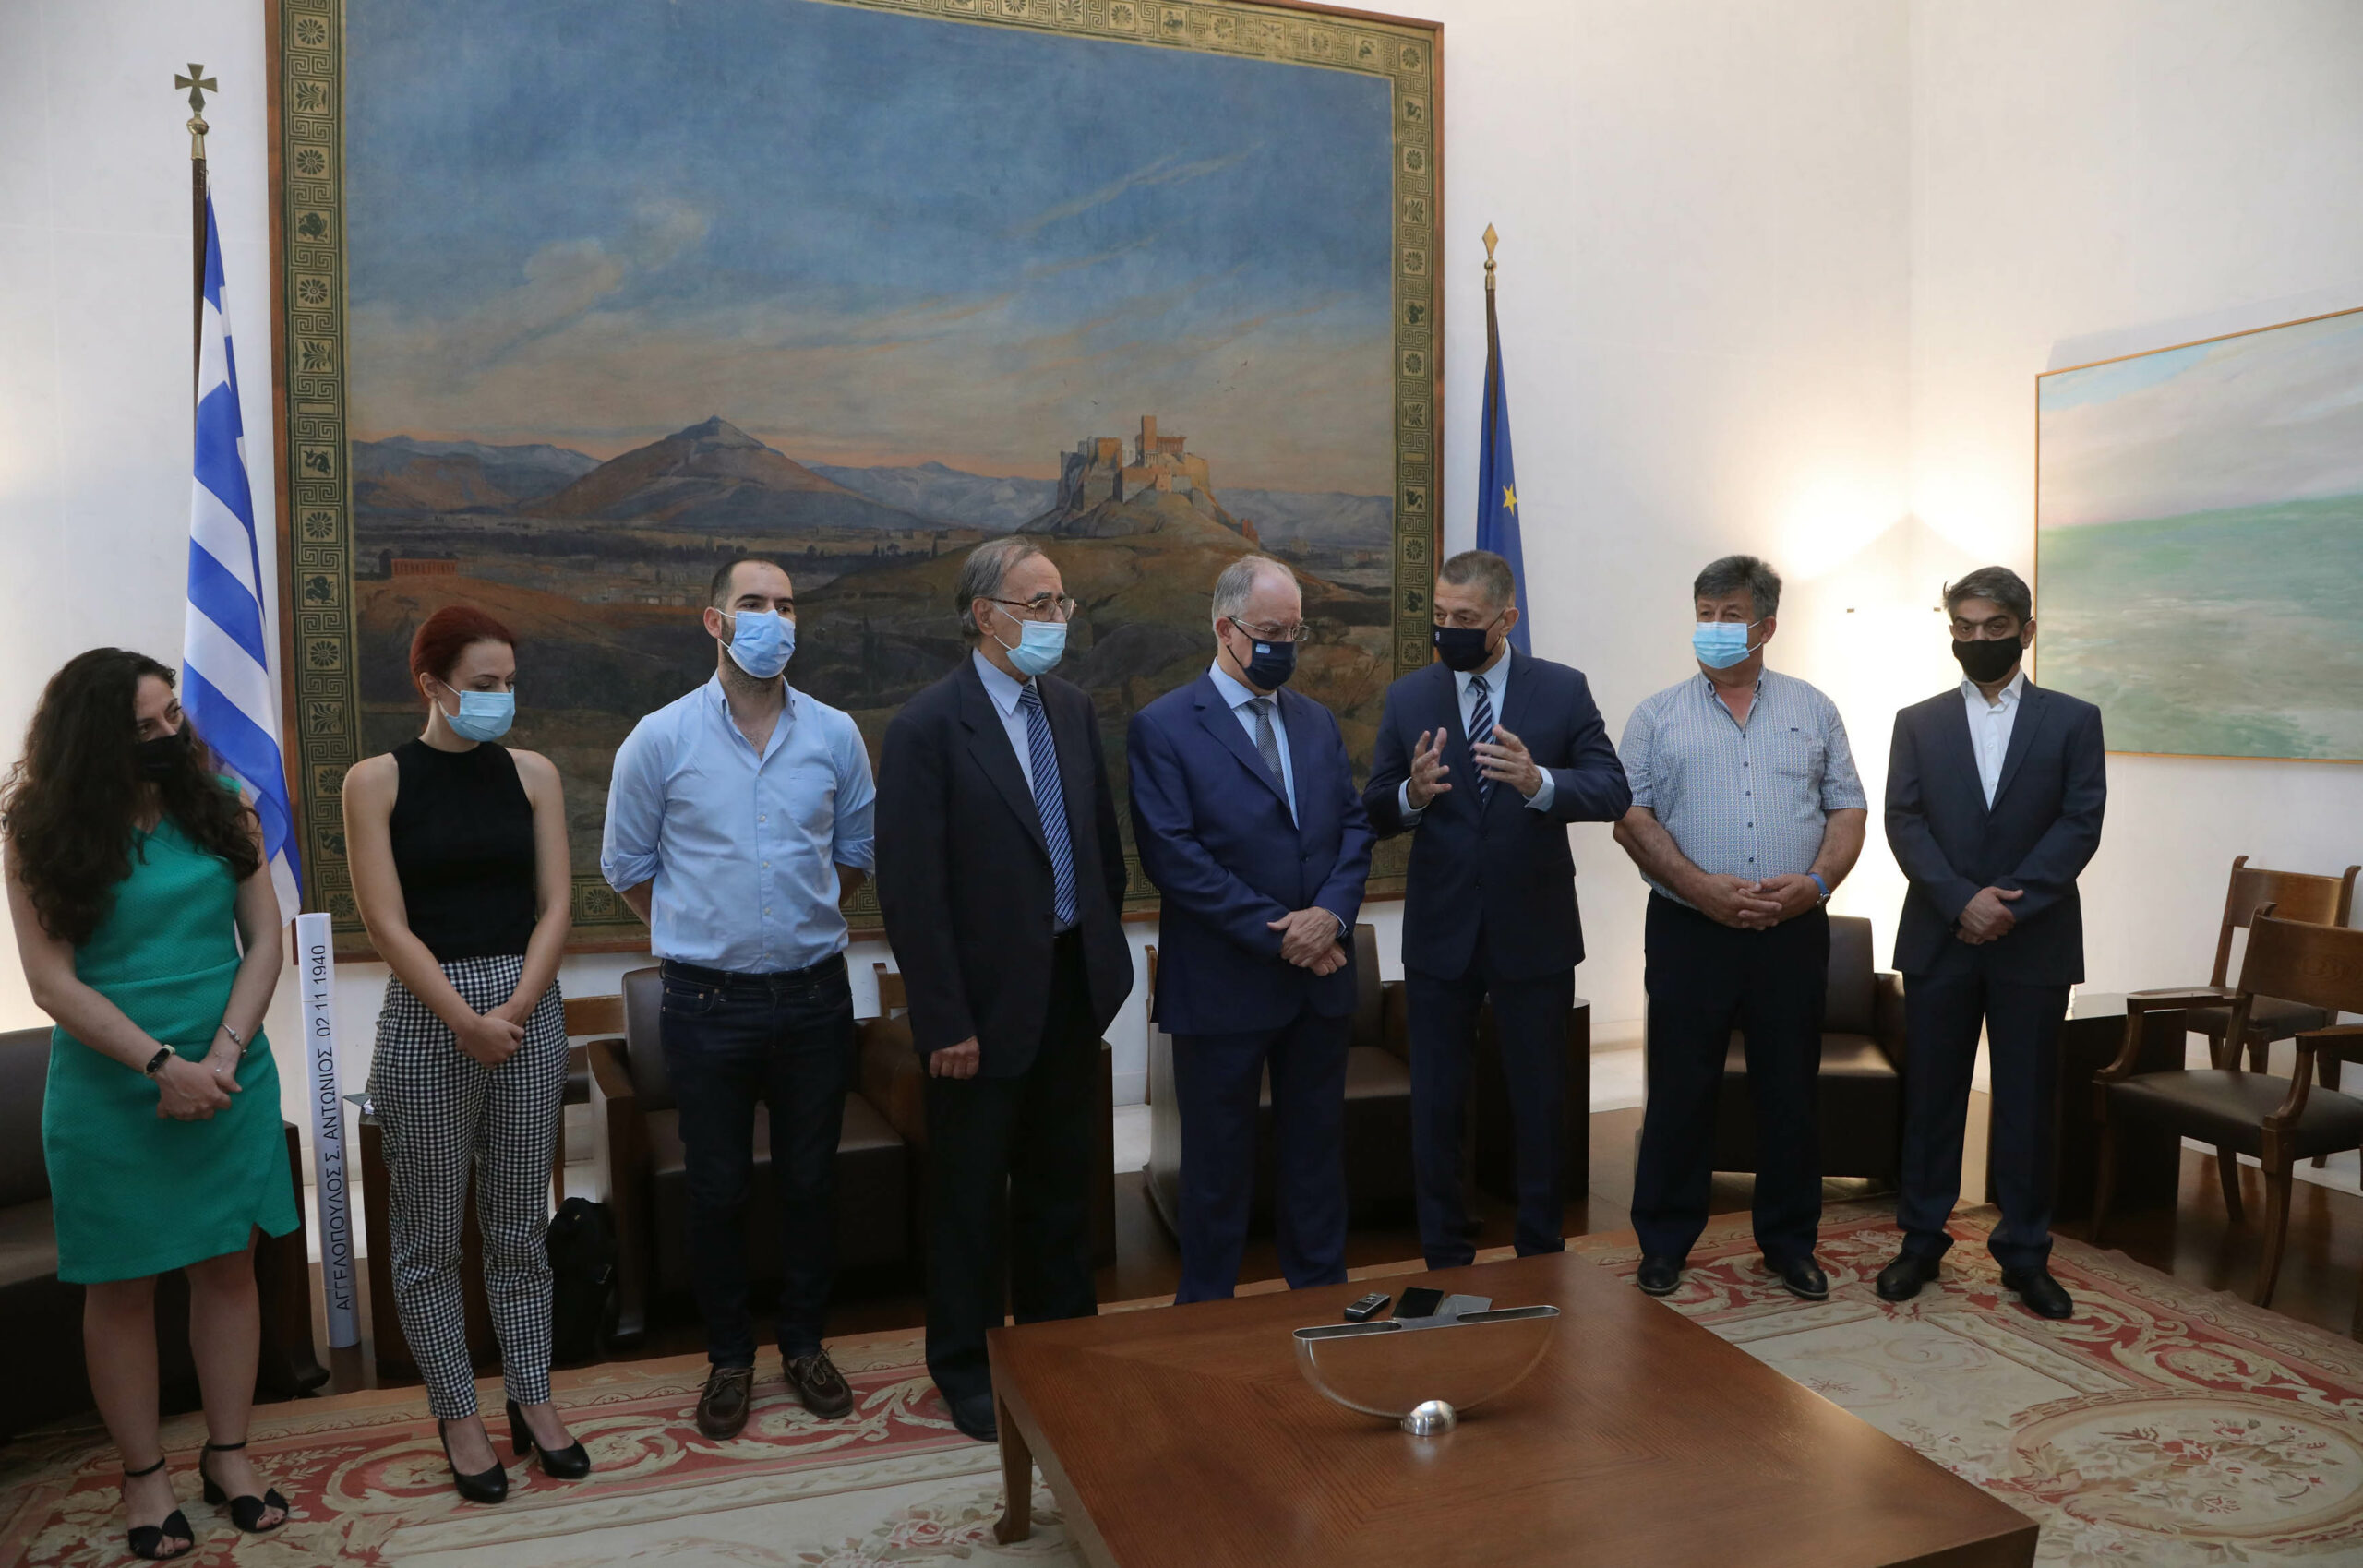 Η Βουλή των Ελλήνων χρηματοδοτεί την ανέγερση Μνημείου Πεσόντων του Έπους 1940 στο Καλπάκι